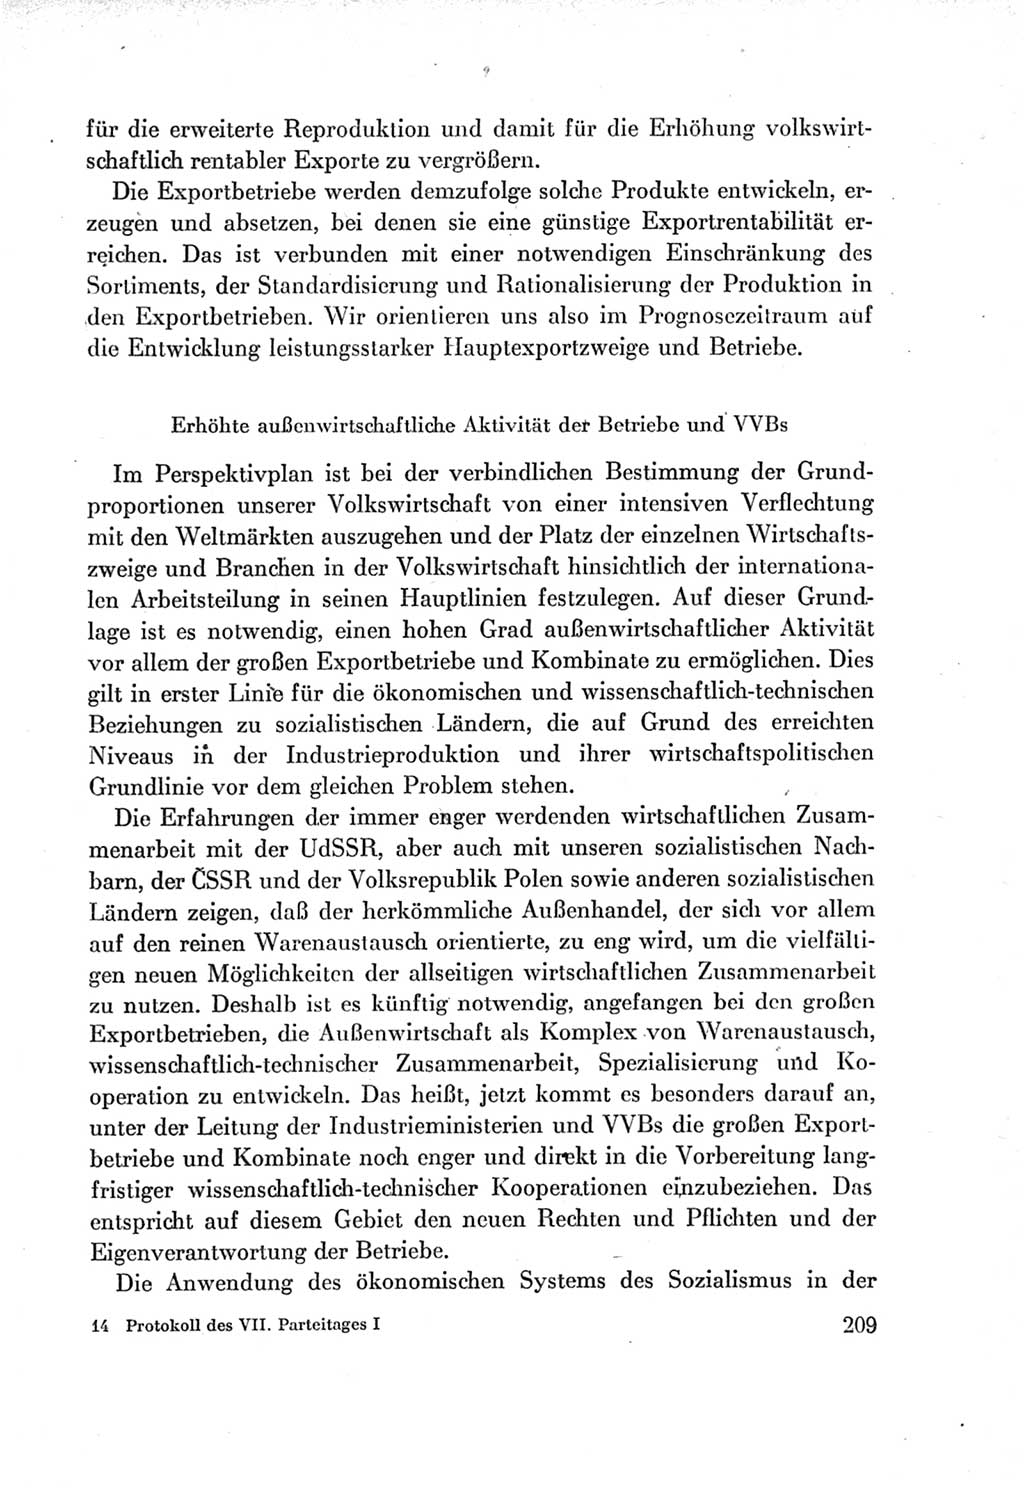 Protokoll der Verhandlungen des Ⅶ. Parteitages der Sozialistischen Einheitspartei Deutschlands (SED) [Deutsche Demokratische Republik (DDR)] 1967, Band Ⅰ, Seite 209 (Prot. Verh. Ⅶ. PT SED DDR 1967, Bd. Ⅰ, S. 209)